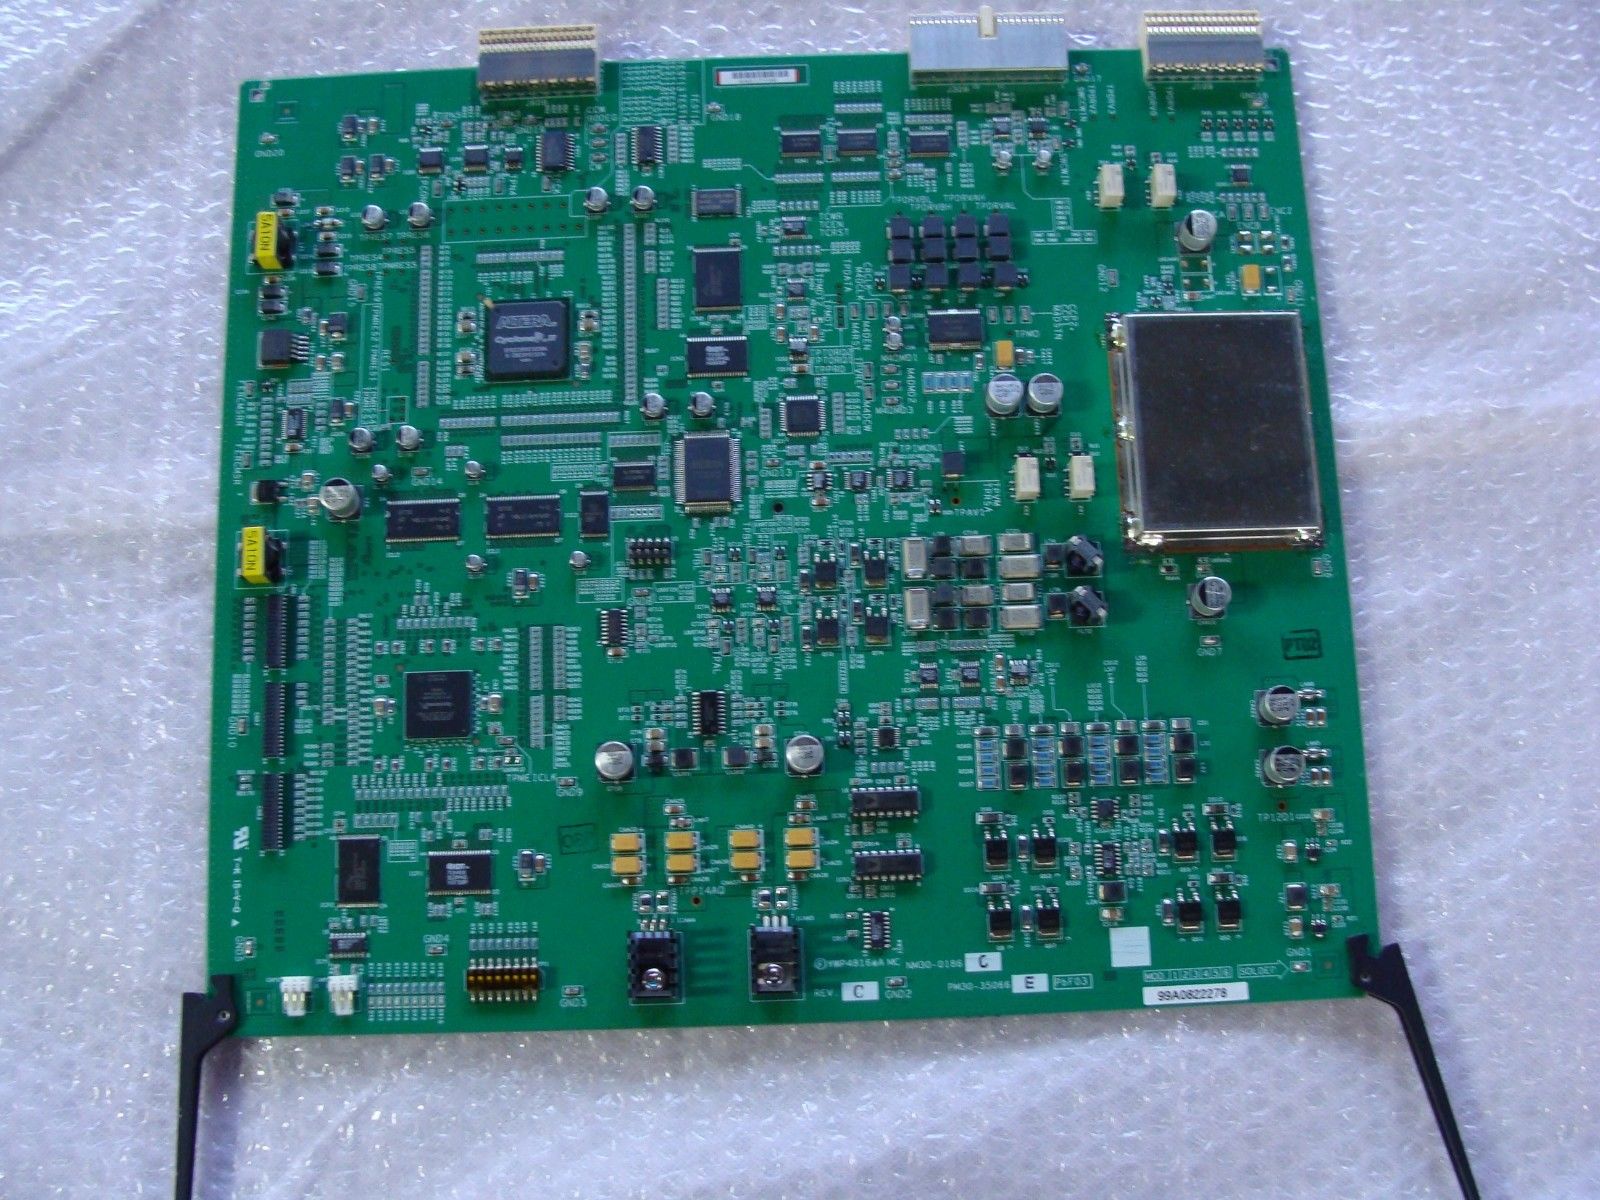 PM30-35066 E REV. C YWP4816 A MC TOSHIBA APLIO XG SSA-790A ULTRASOUND BOARD DIAGNOSTIC ULTRASOUND MACHINES FOR SALE